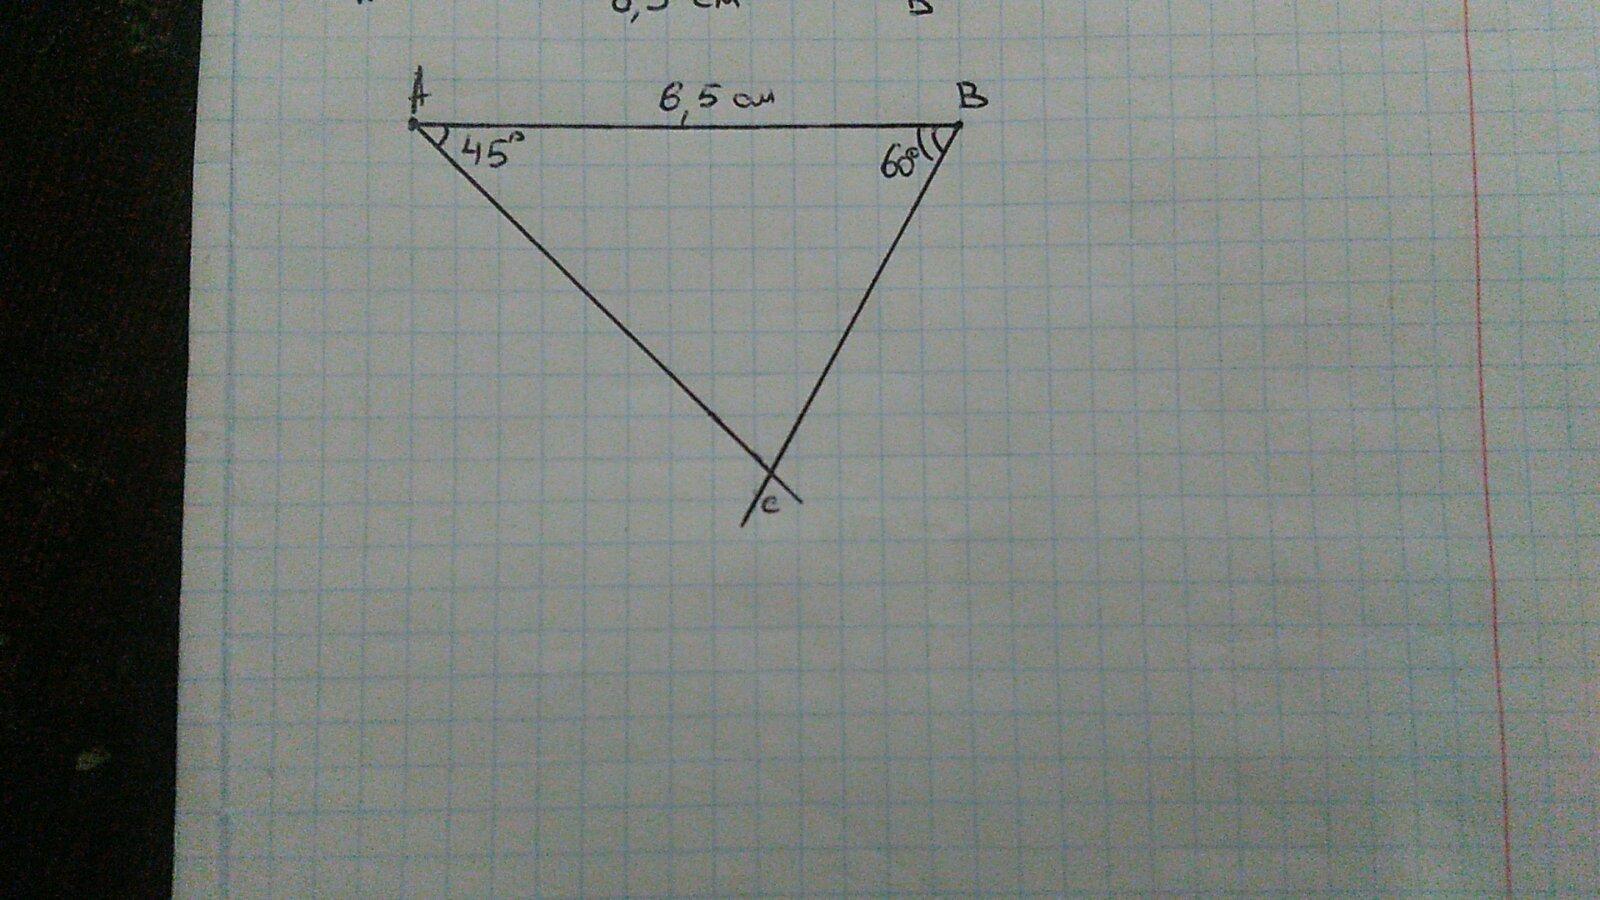 Постройте треугольник авс постройте вектор ав вс. Угол а 45, угол в 60, начертите треугольник. Как строится треугольник с углами 60,60,60. Построить треугольник 8см, 6см, 6 см углы 80,50,50.